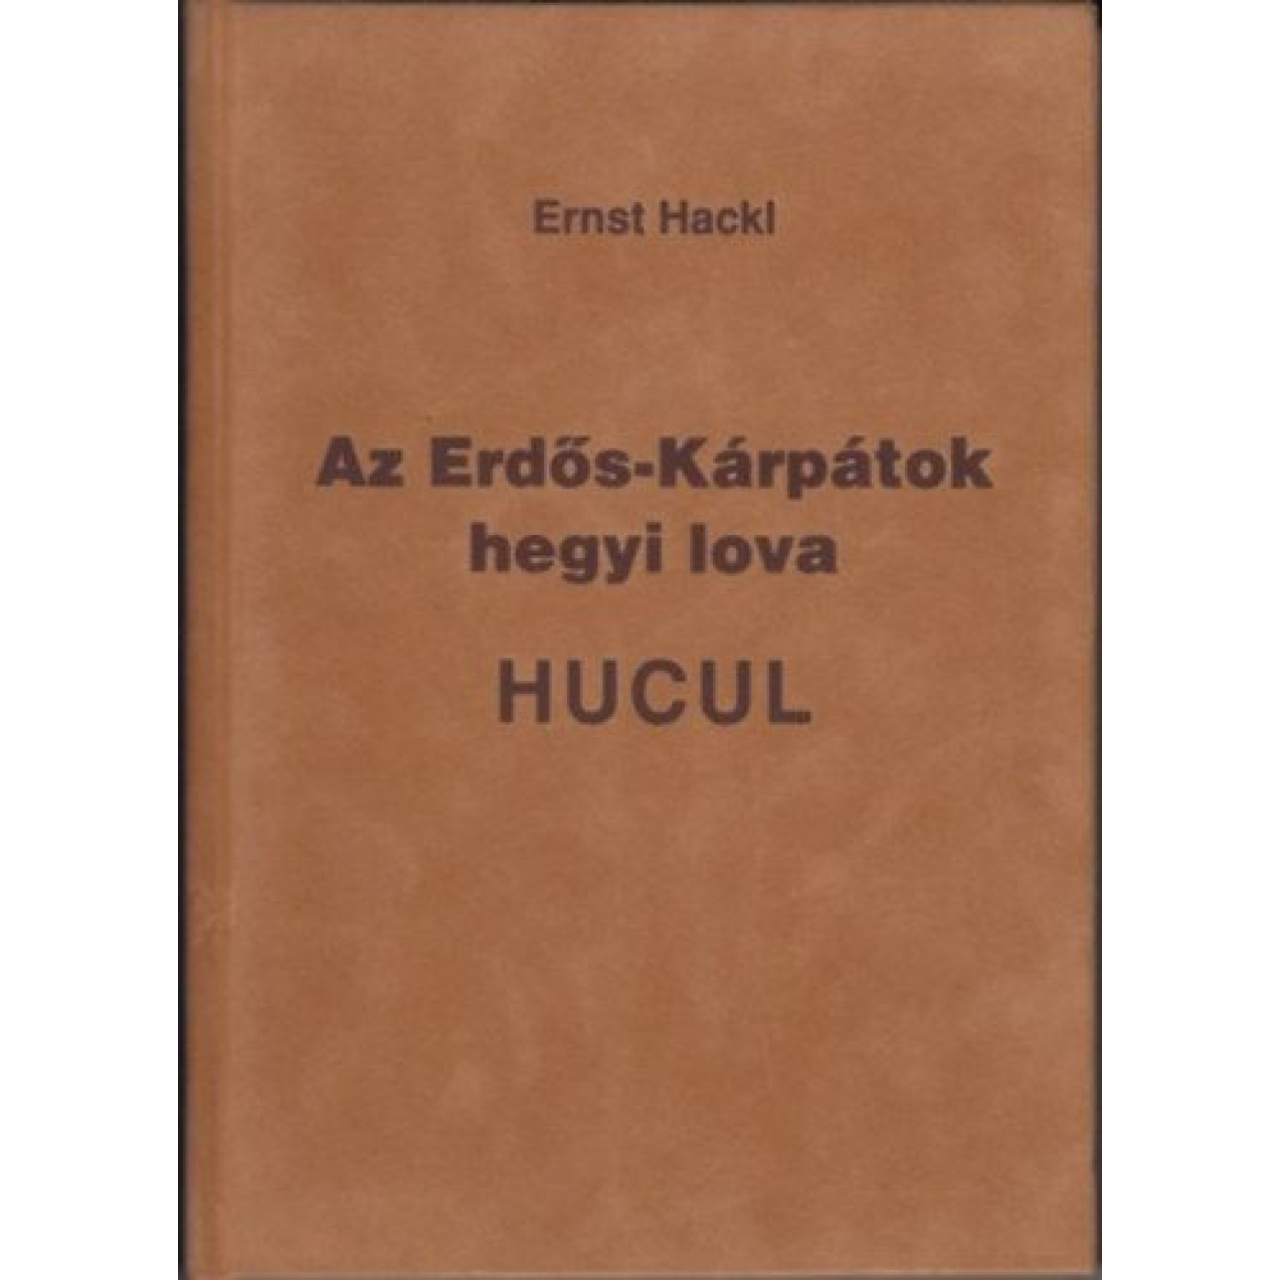 Ernst Hackl: Az Erdős-Kárpátok hegyi lova - HUCUL